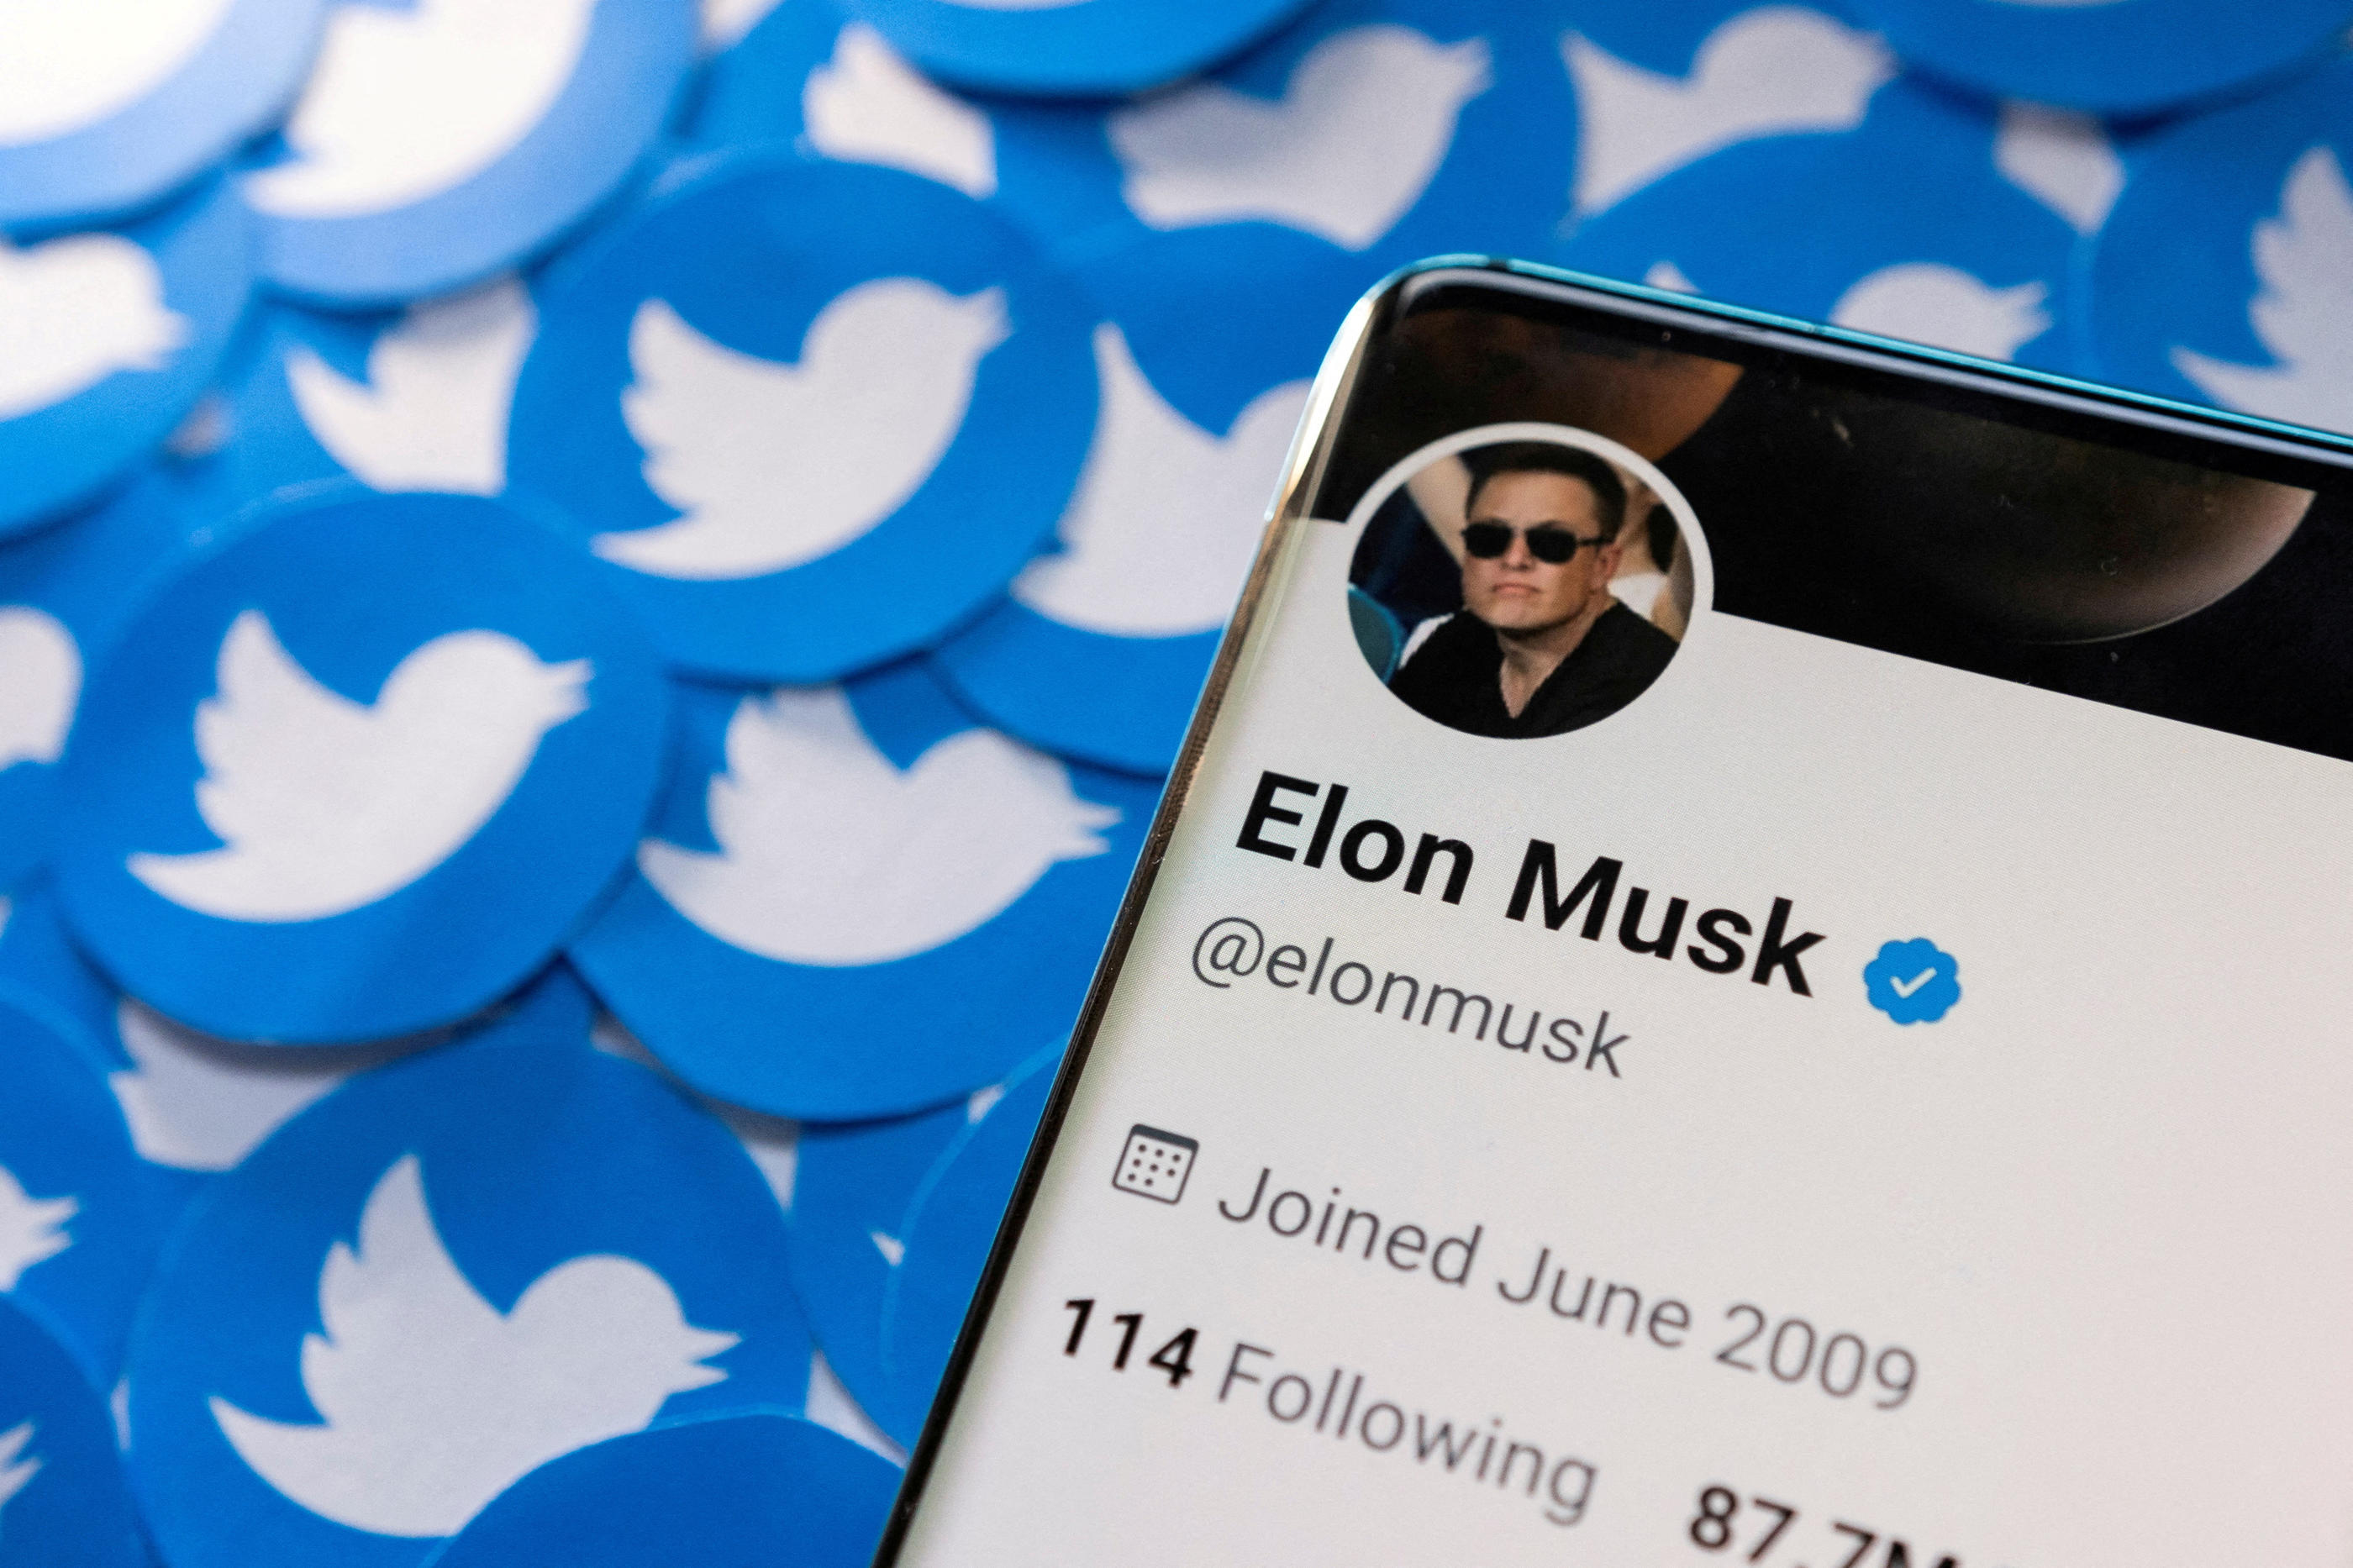 Elon Musk a lancé l'abonnement "Twitter Blue" payant, qui ne nécessite pas de vérification d'identité. REUTERS/Dado Ruvic